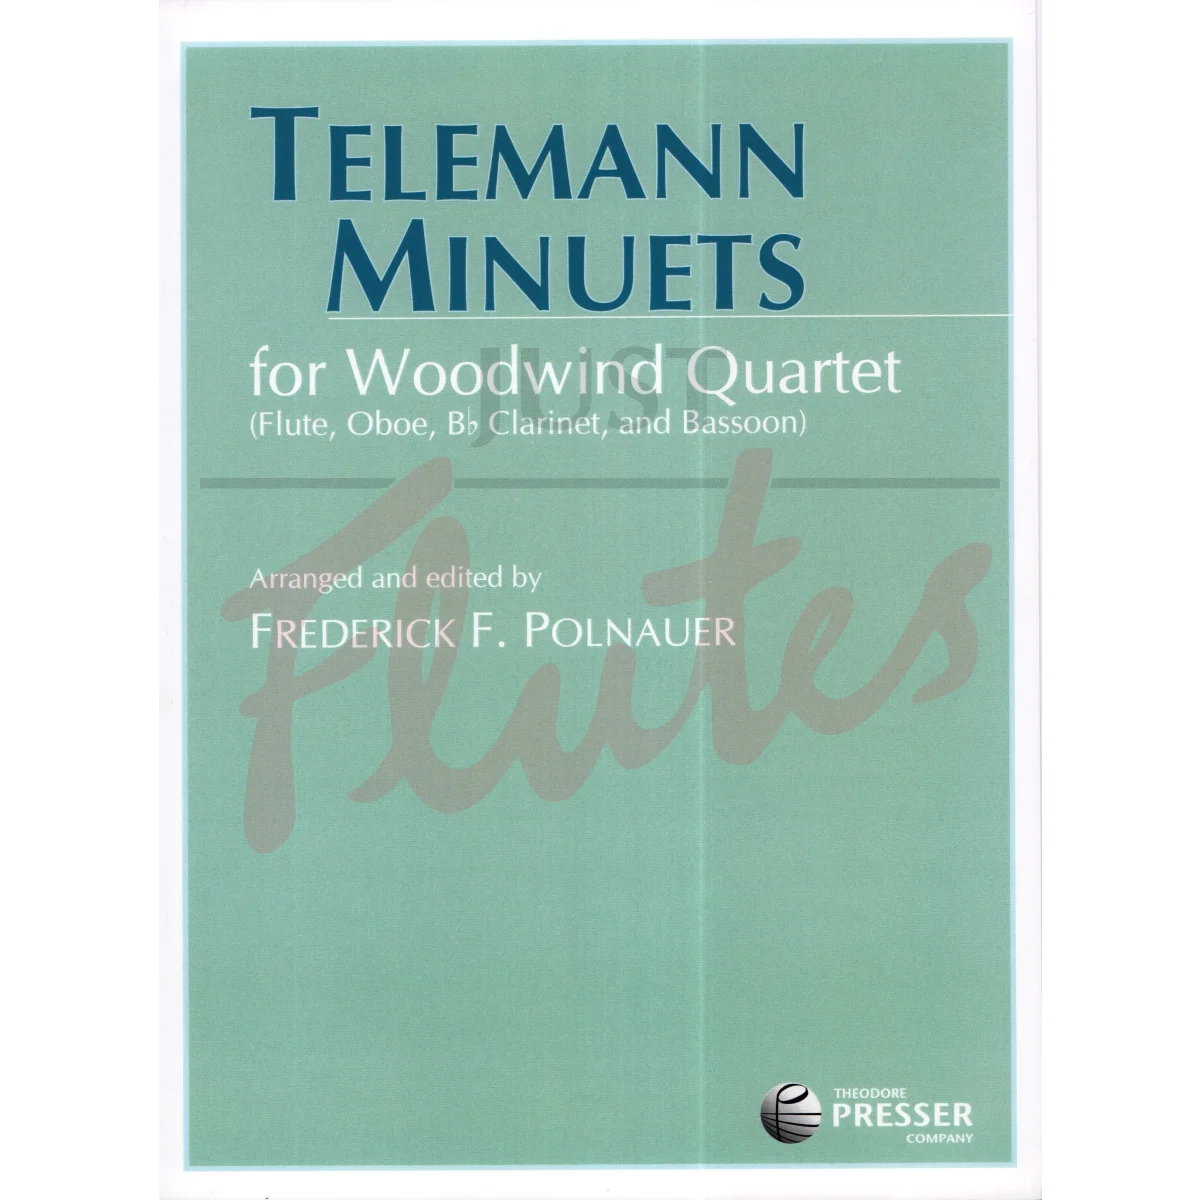 Telemann Minuets for Woodwind Quartet